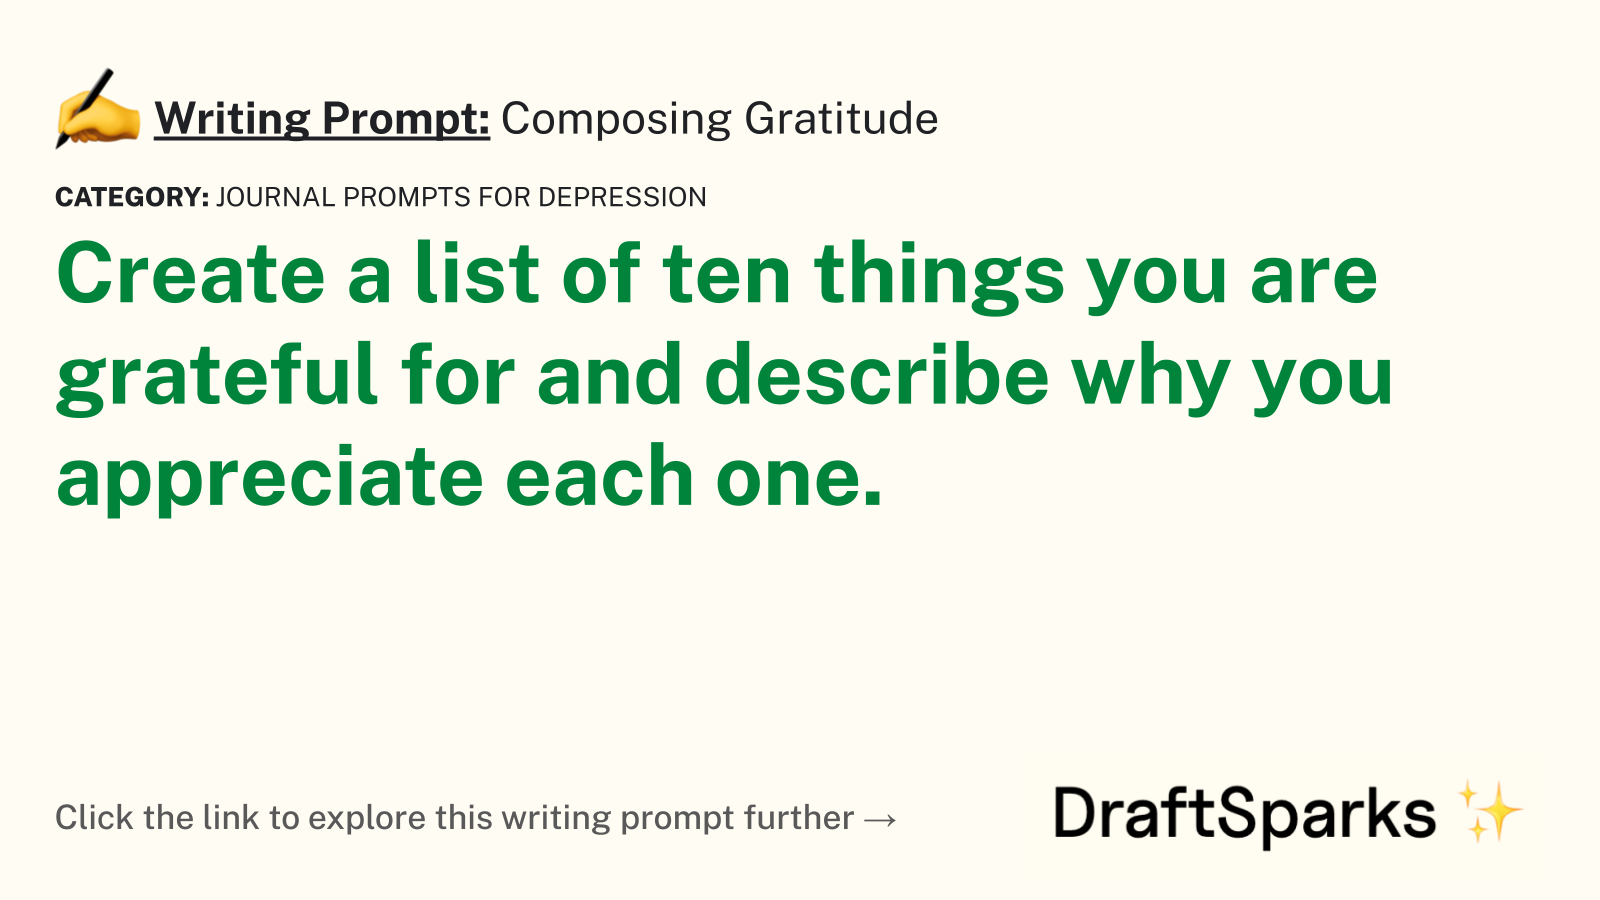 Composing Gratitude